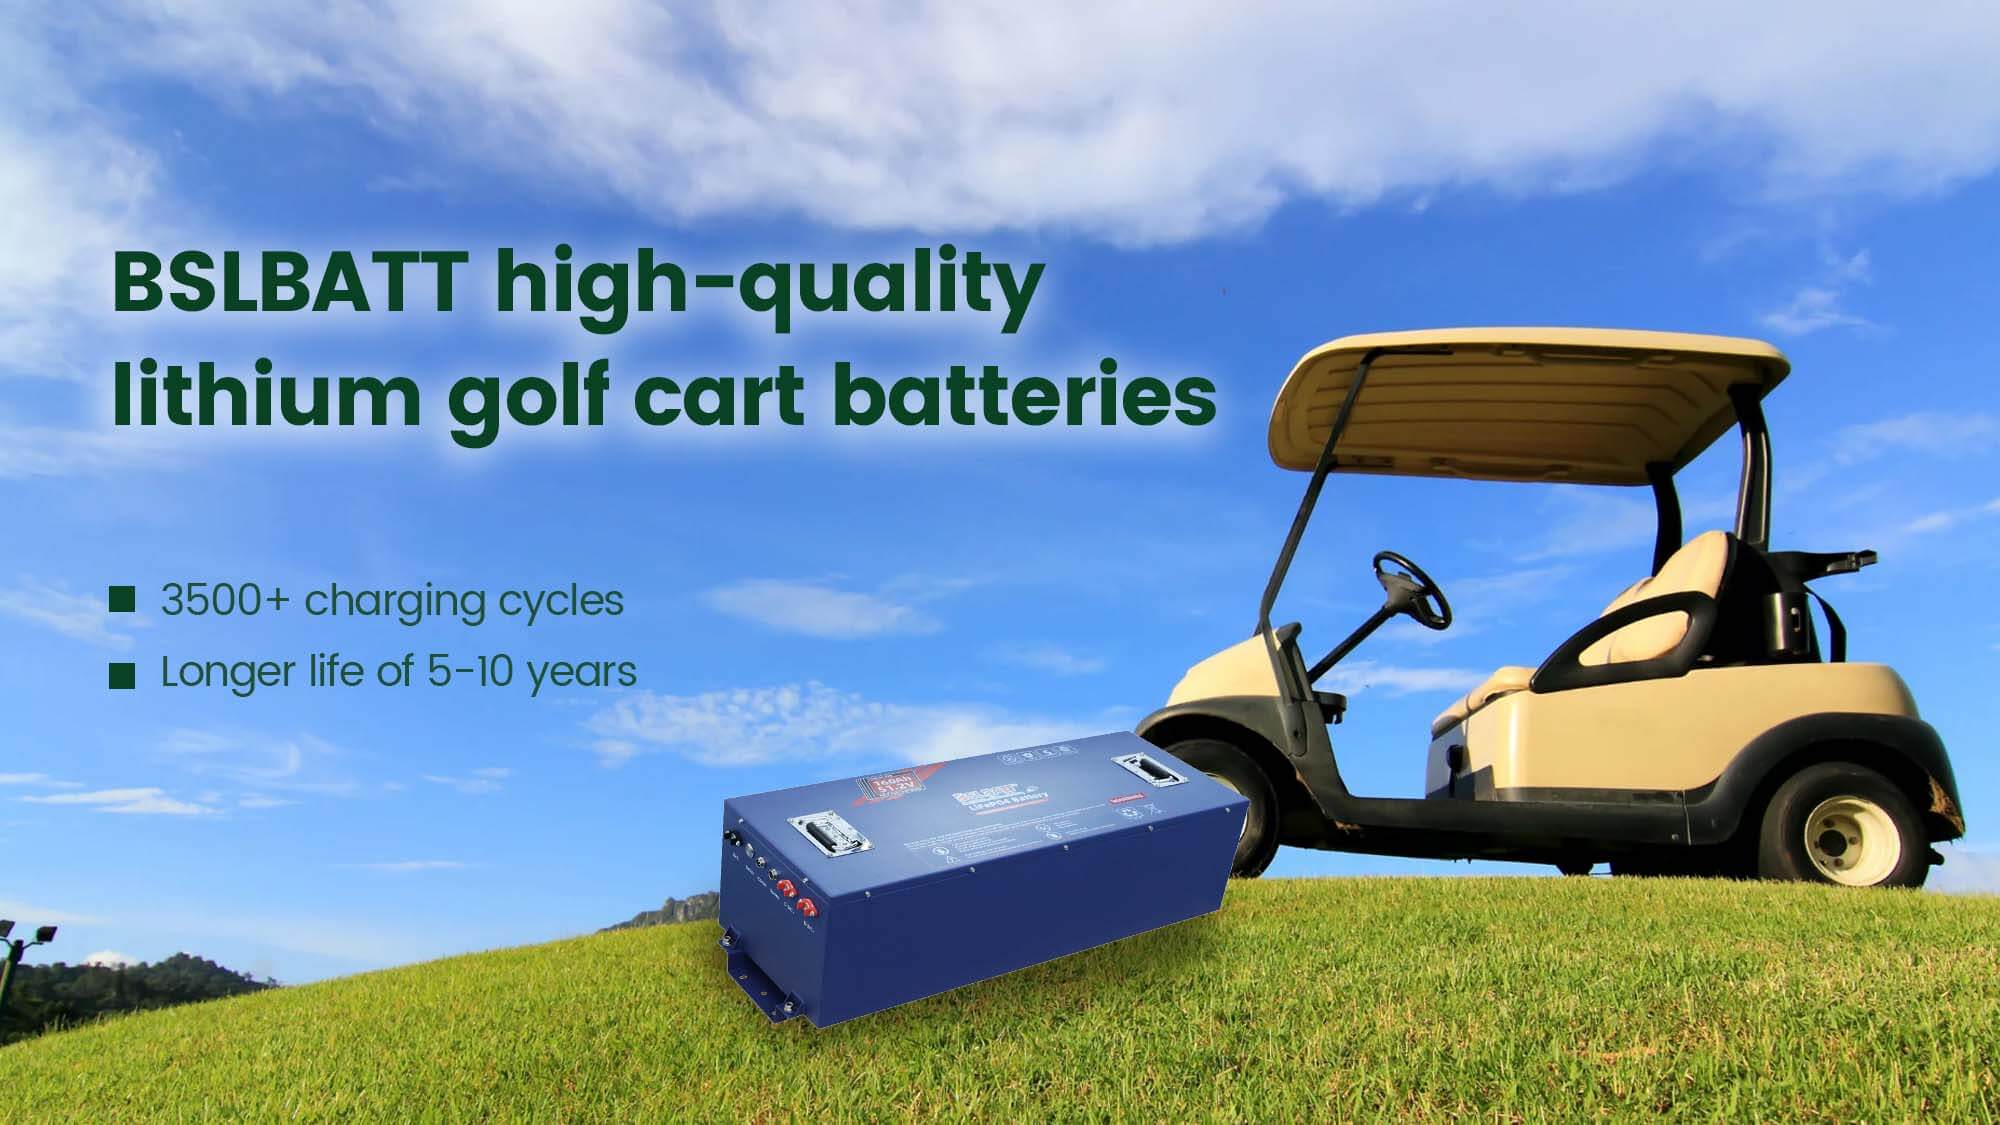 lithium golf cart batteries